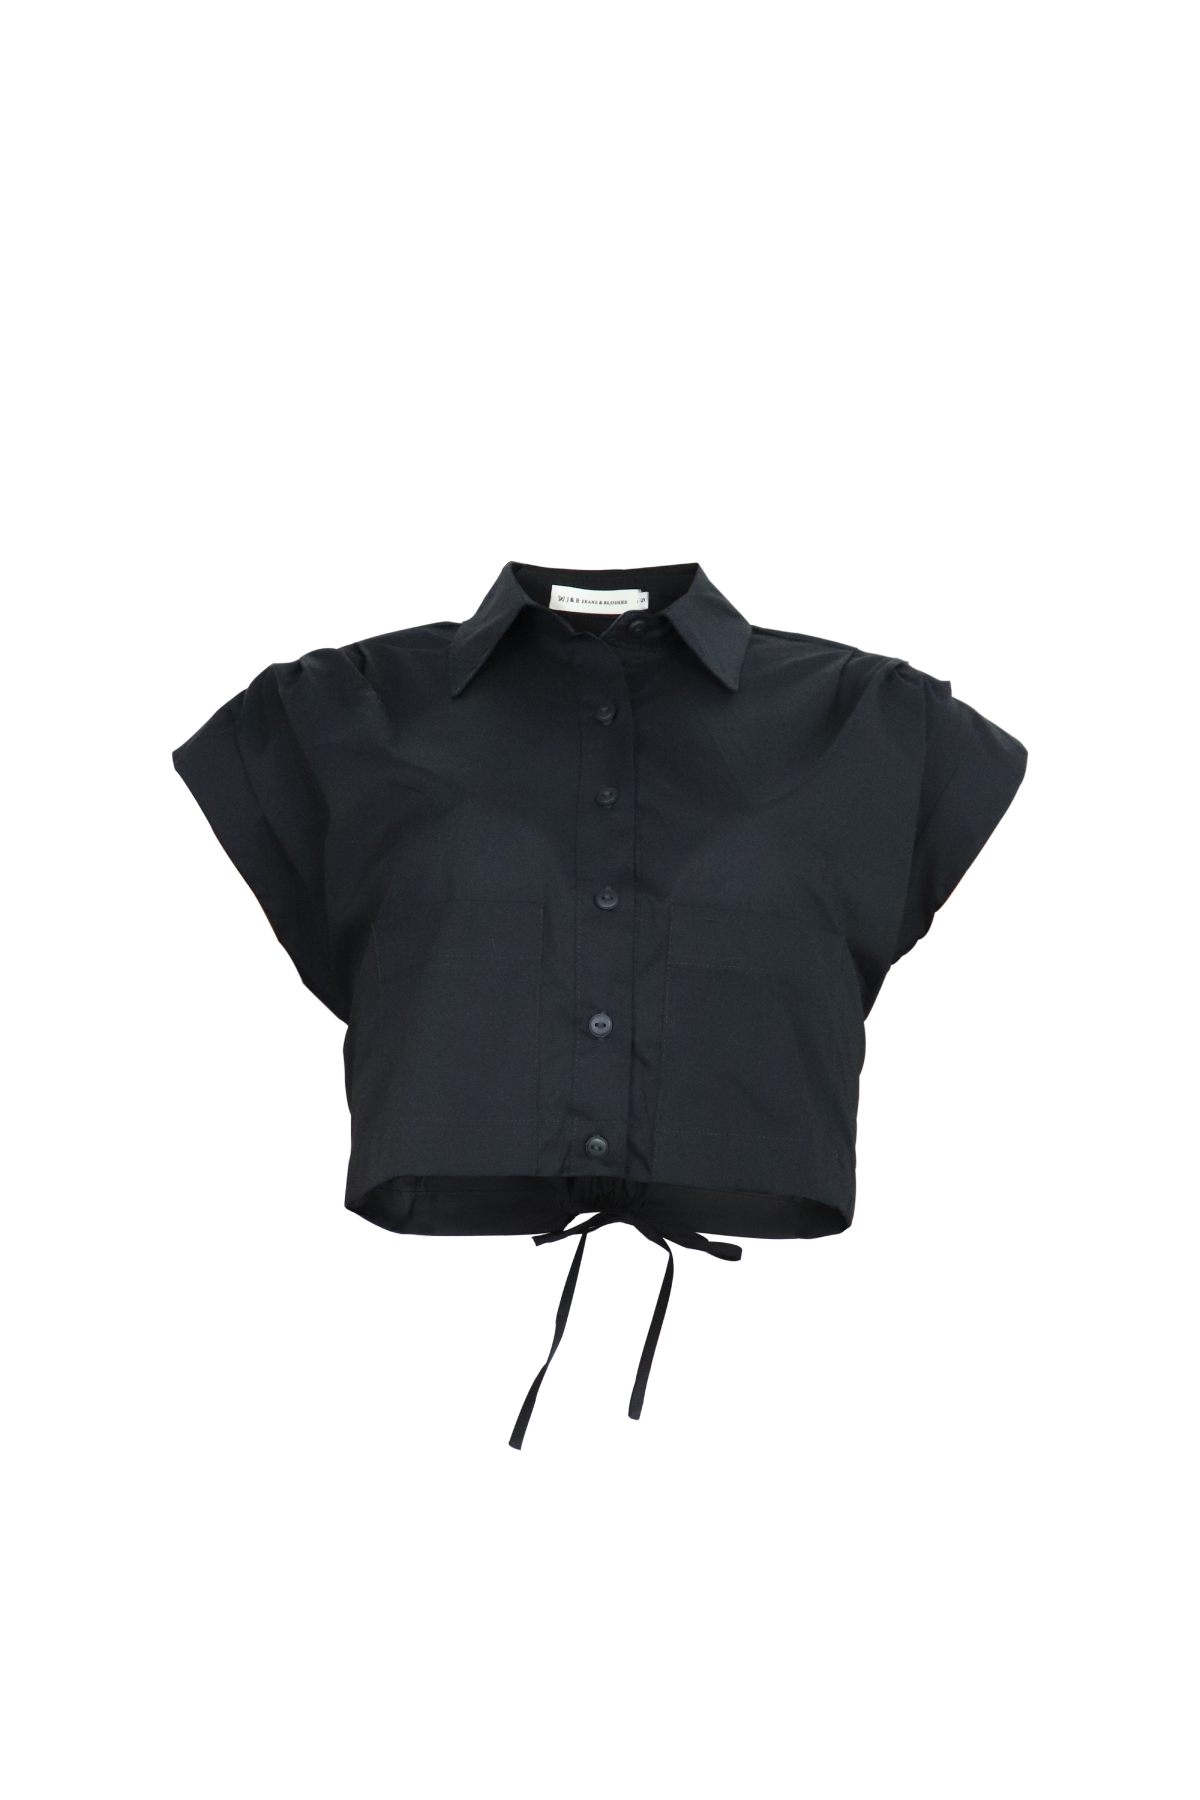 Camisa negra tipo crop top con mangas cortas.